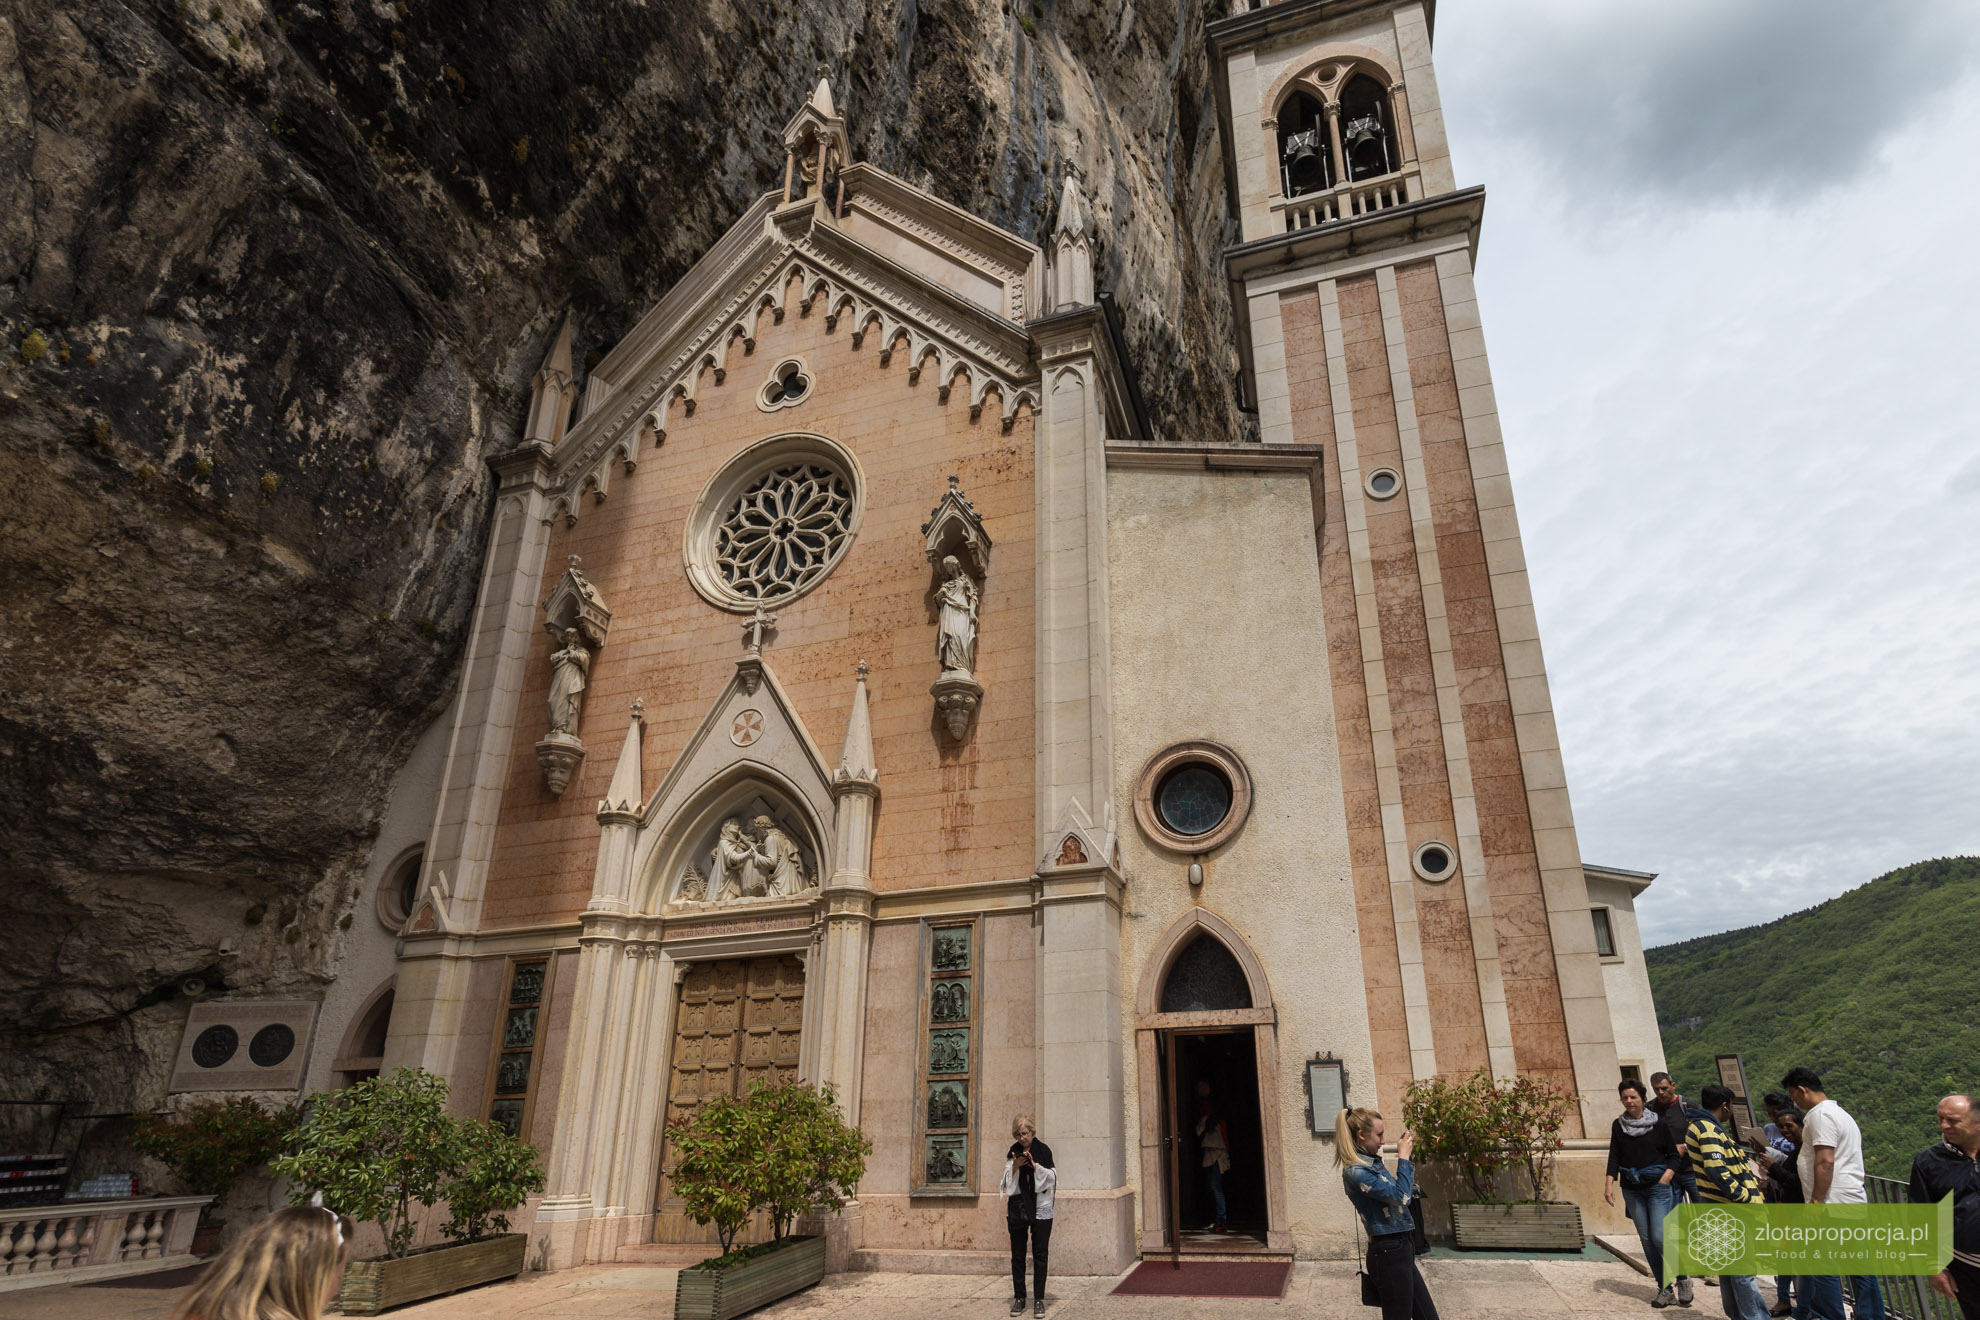 Sanktuarium Madonna della Corona, Spiazzi, okolice Werony, okolice Jeziora Garda, Wenecja Euganejska, atrakcje Włoch